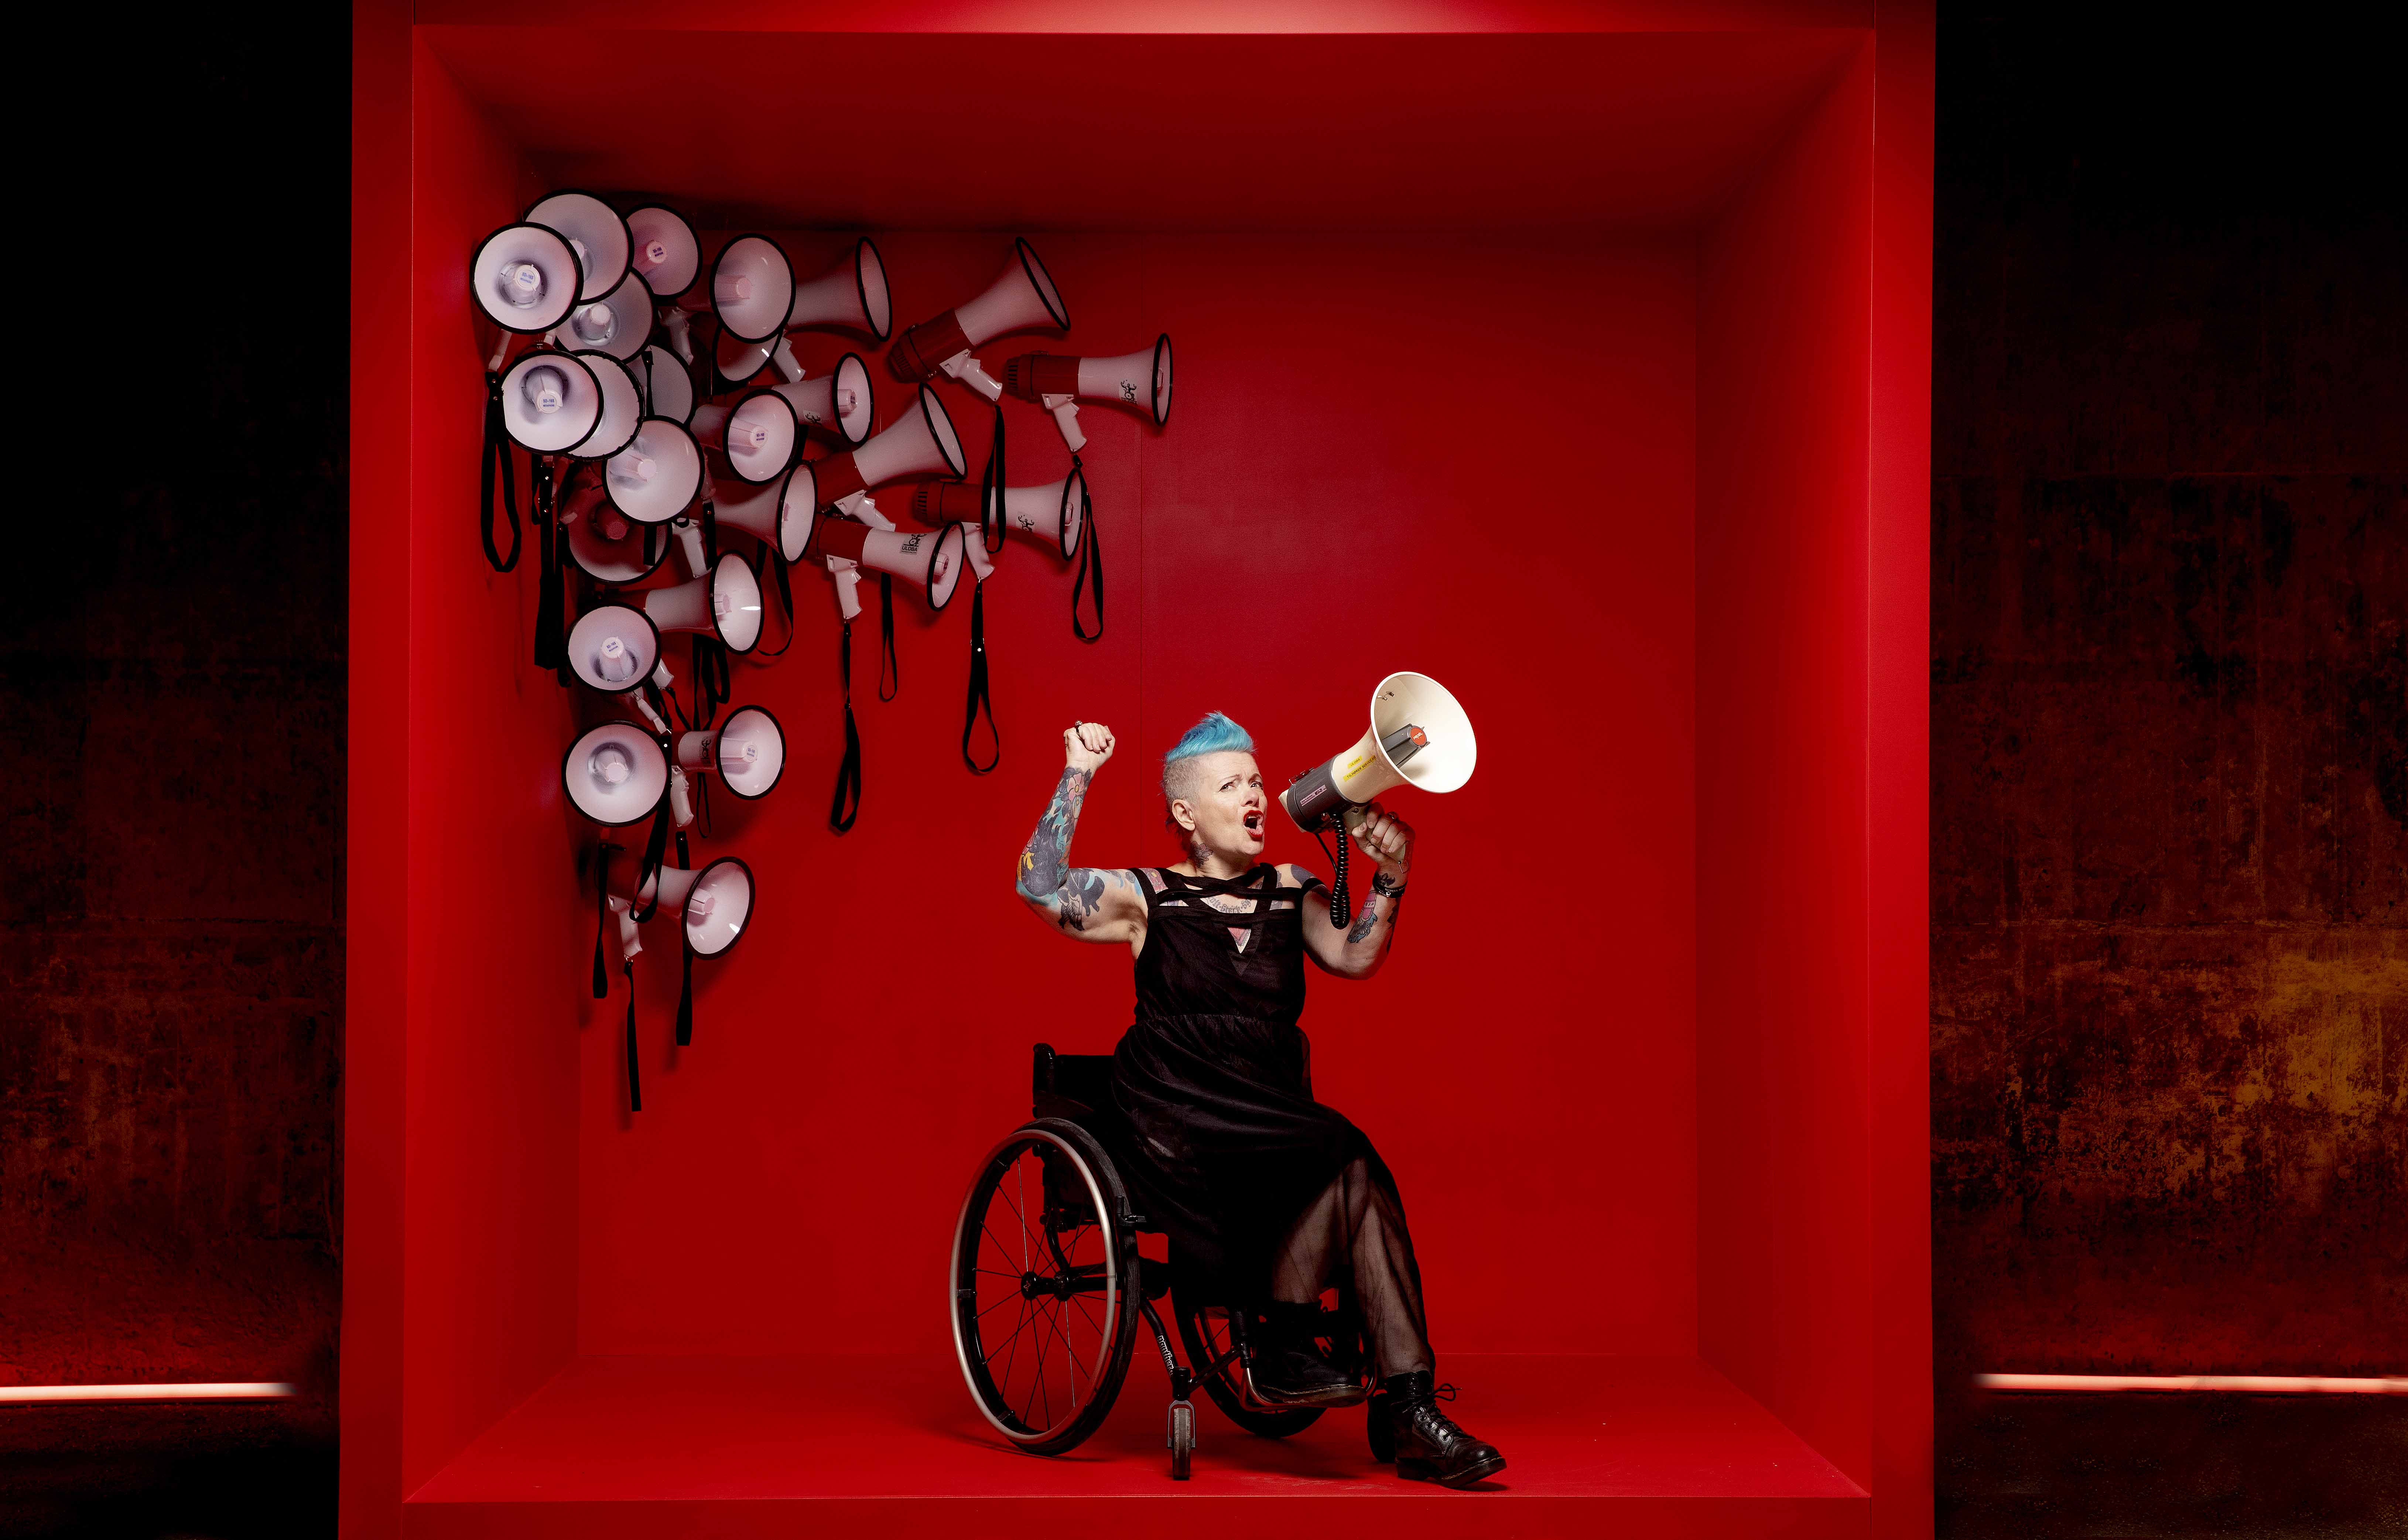 (1) Helle-Viv i en stor rød boks, med hvite og røde roperter i venstre hjørne. Helle-Viv sitter i en rullestol, med svarte klær, og roper inn i en ropert. Hun har mange tatoveringer, og blått kult hår. 